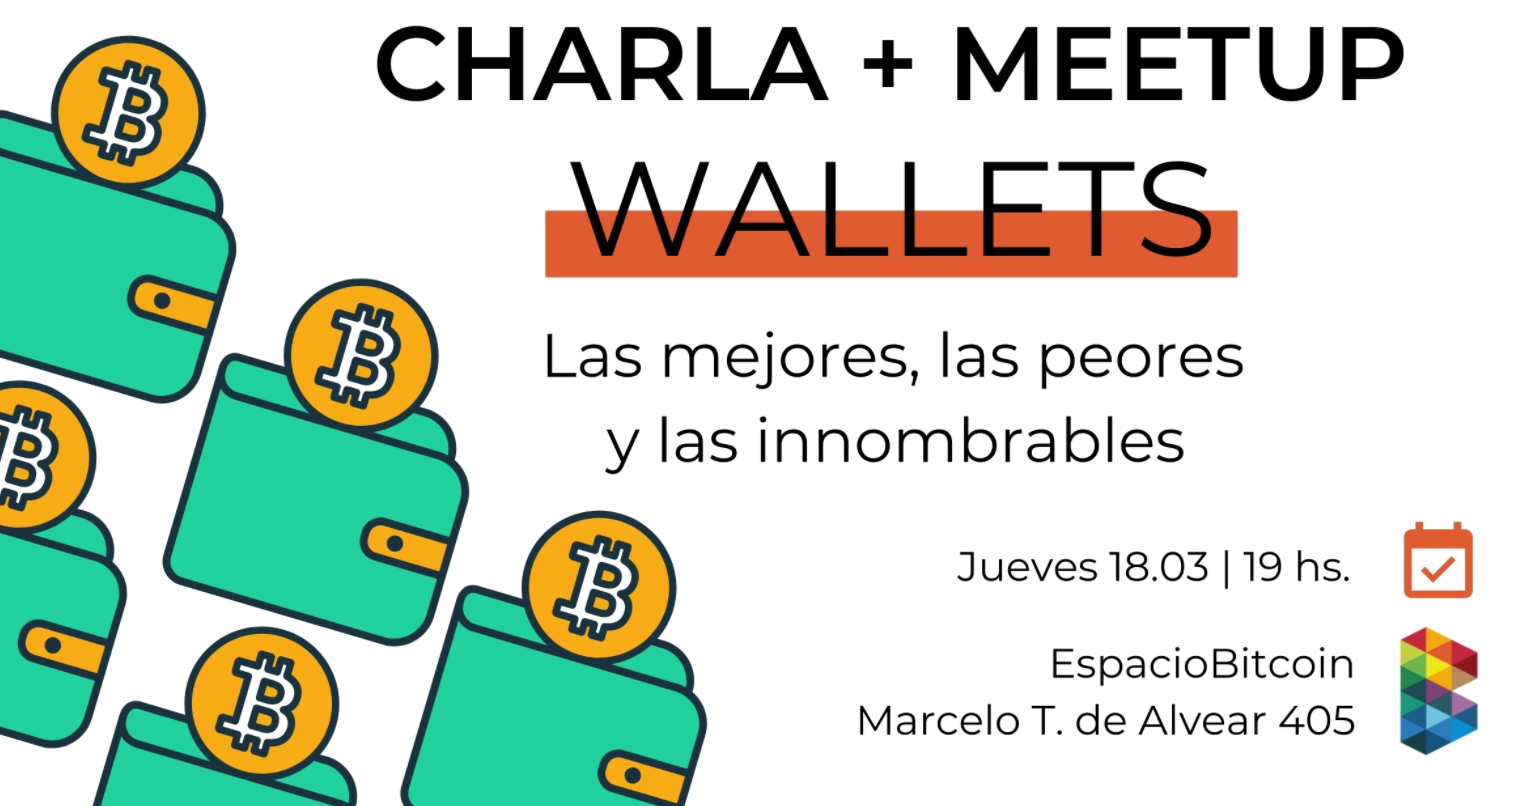 Charla + Meetup con la participación de La Bitcoineta